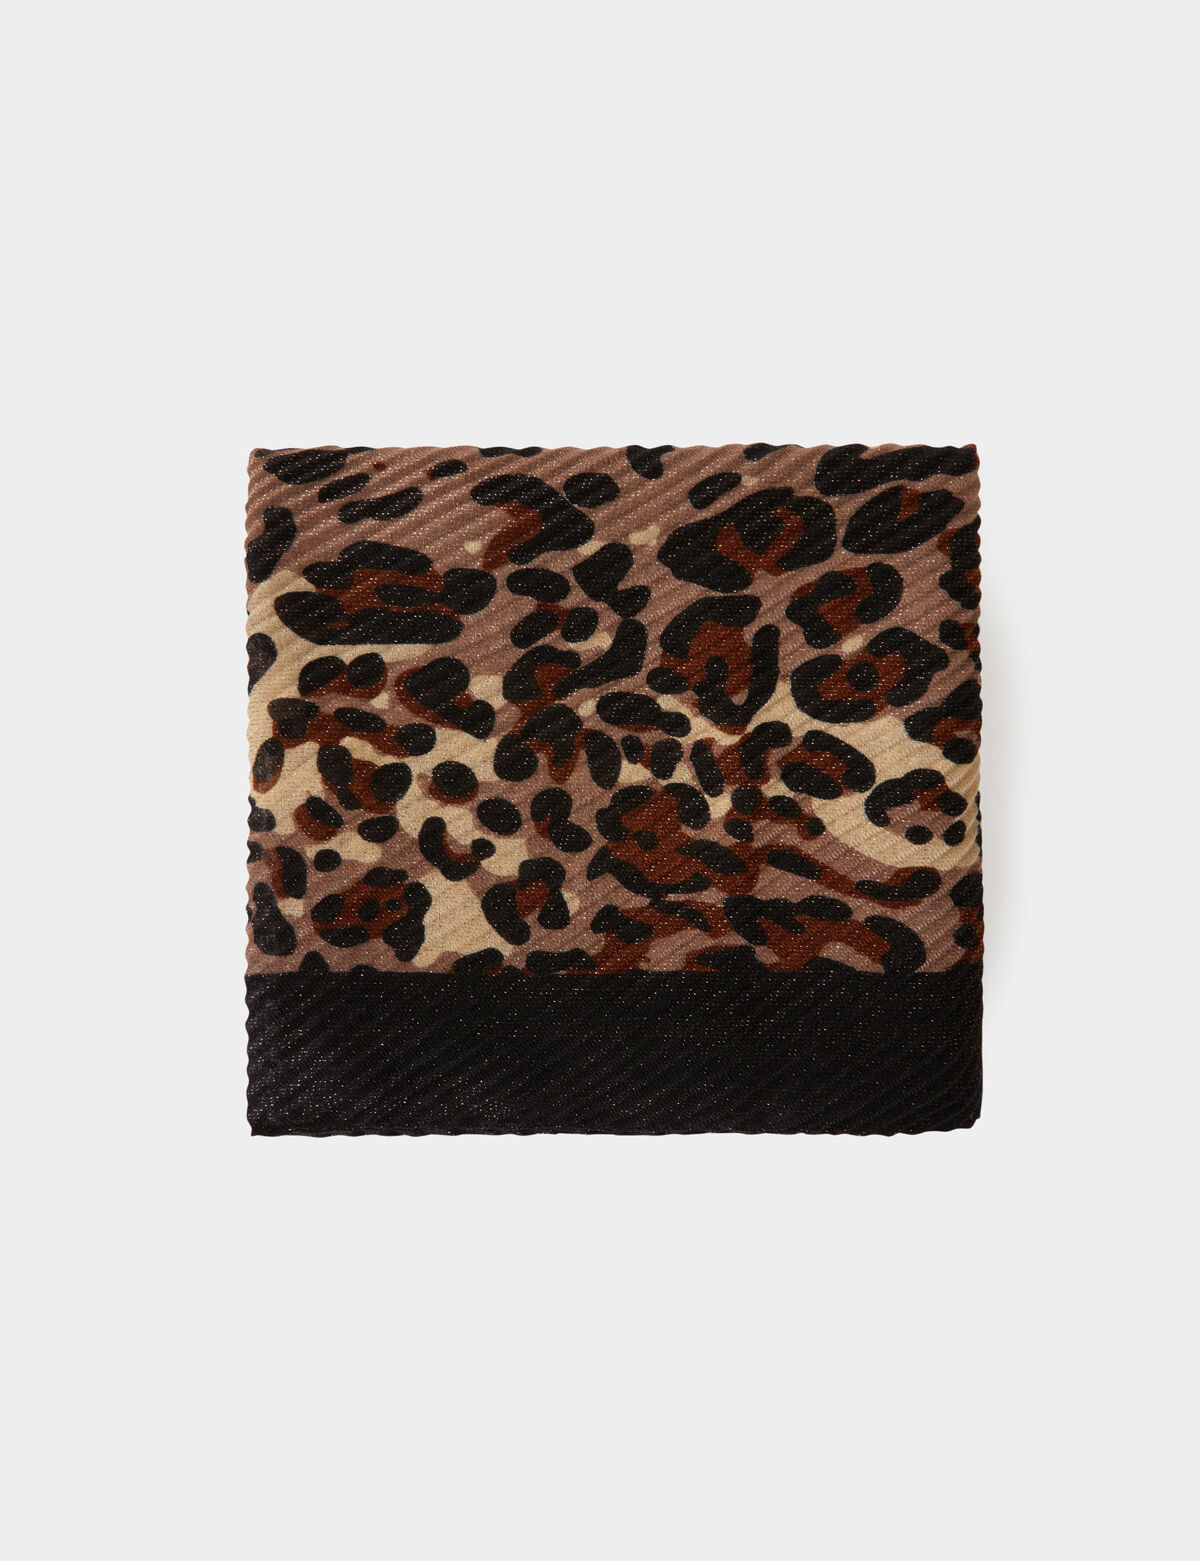 Fular plisado estampado de leopardo 241-5pliss